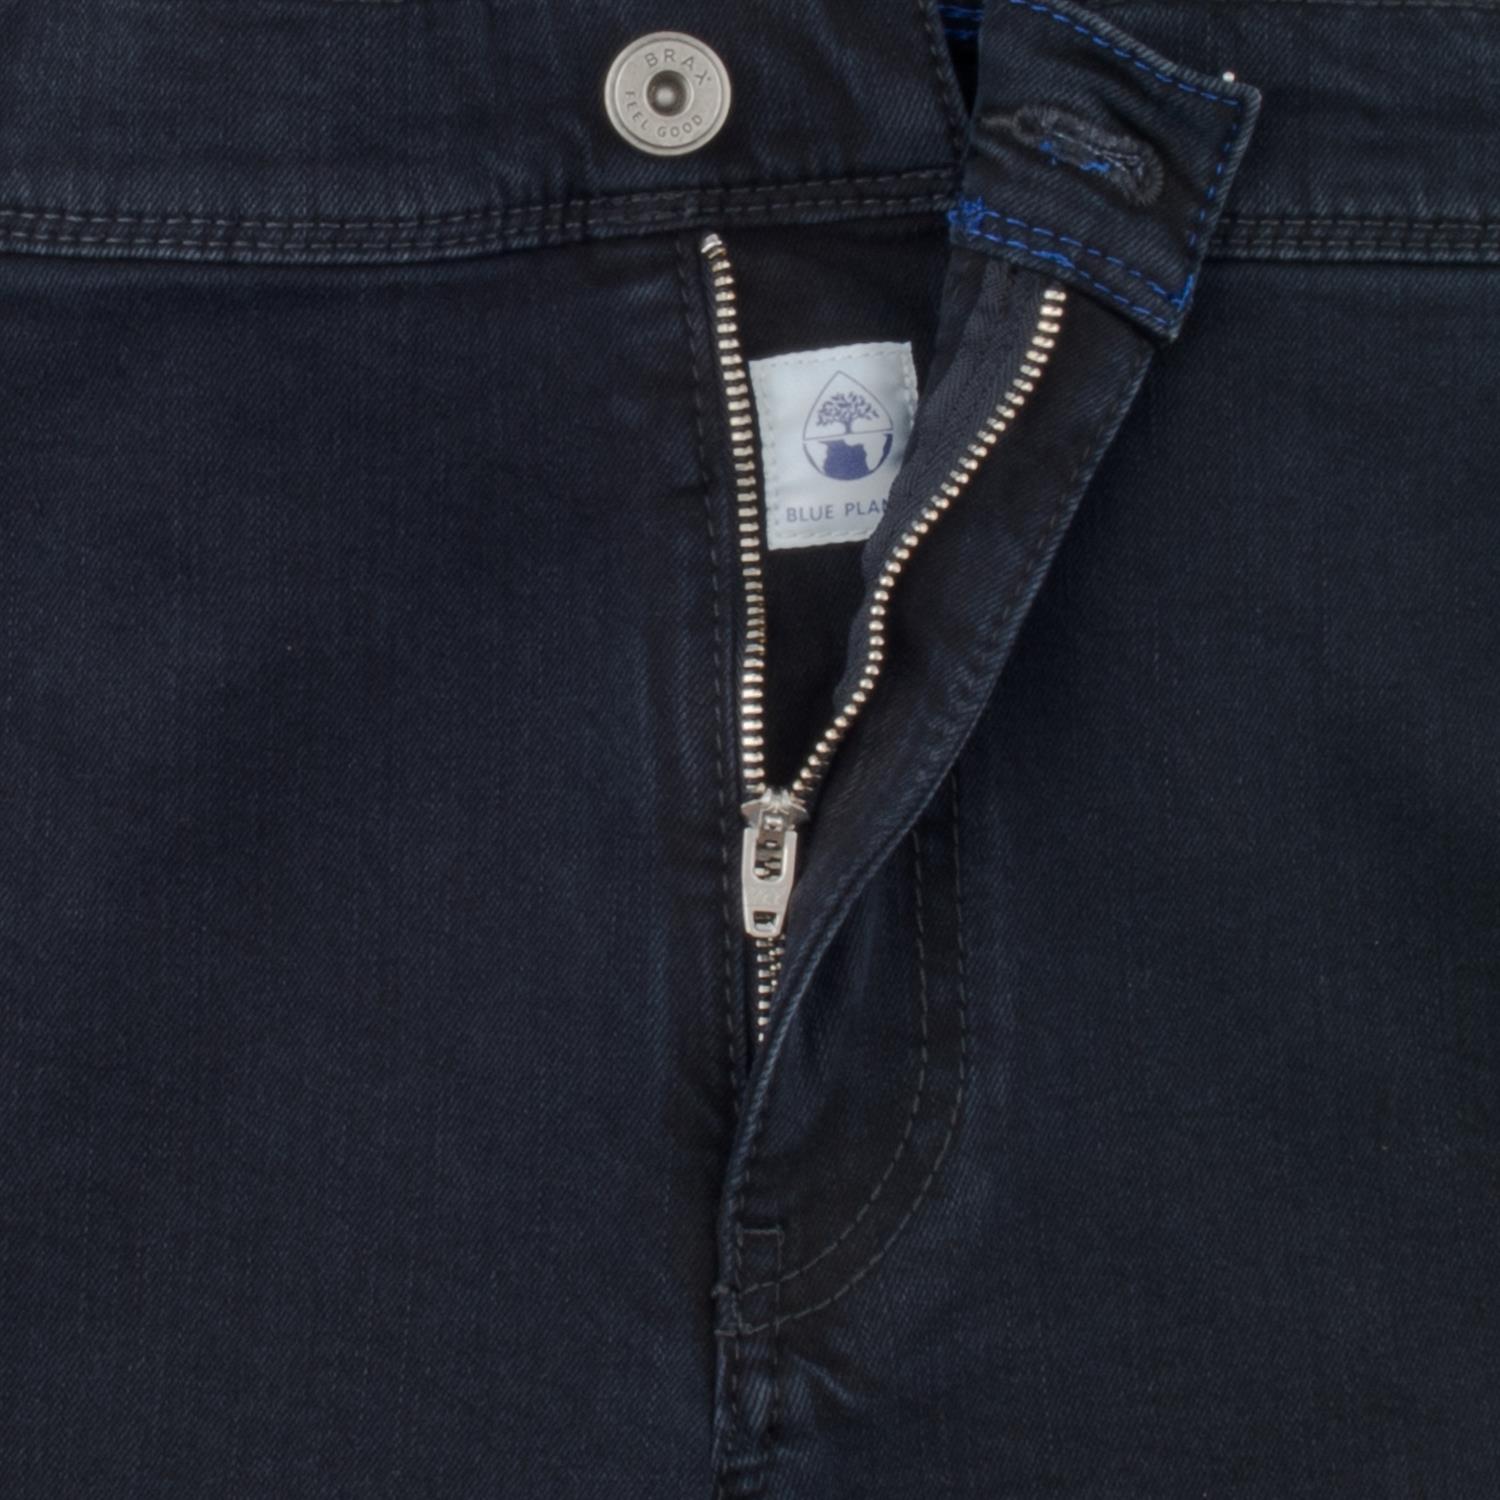 BRAX Jeans kaufen in Übergrößen Herrenmode dunkelblau